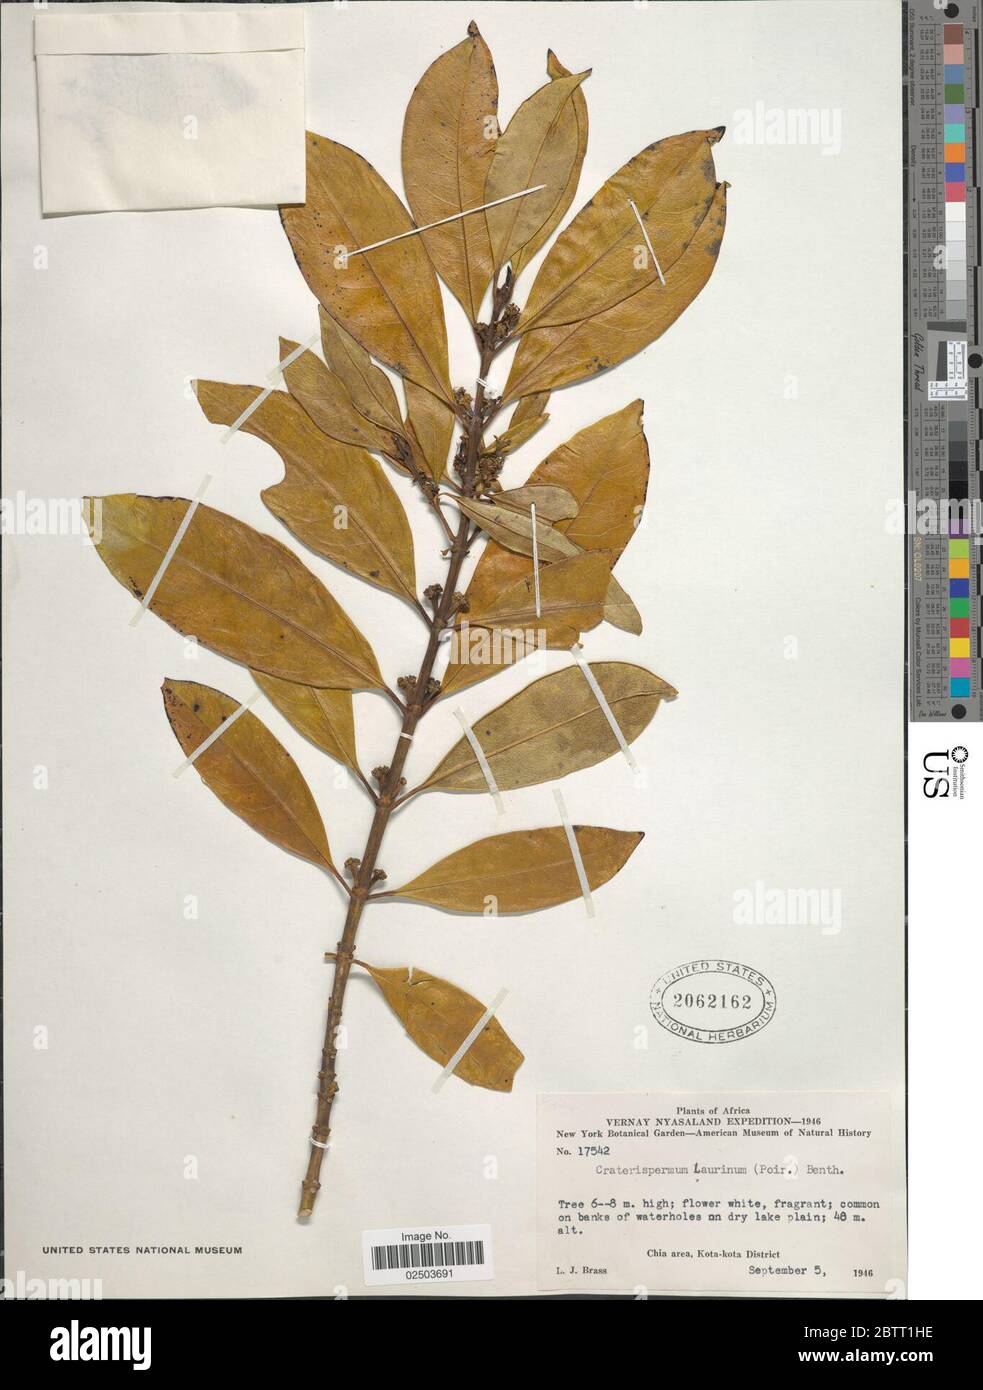 Craterispermum laurinum Poir Benth. Stock Photo